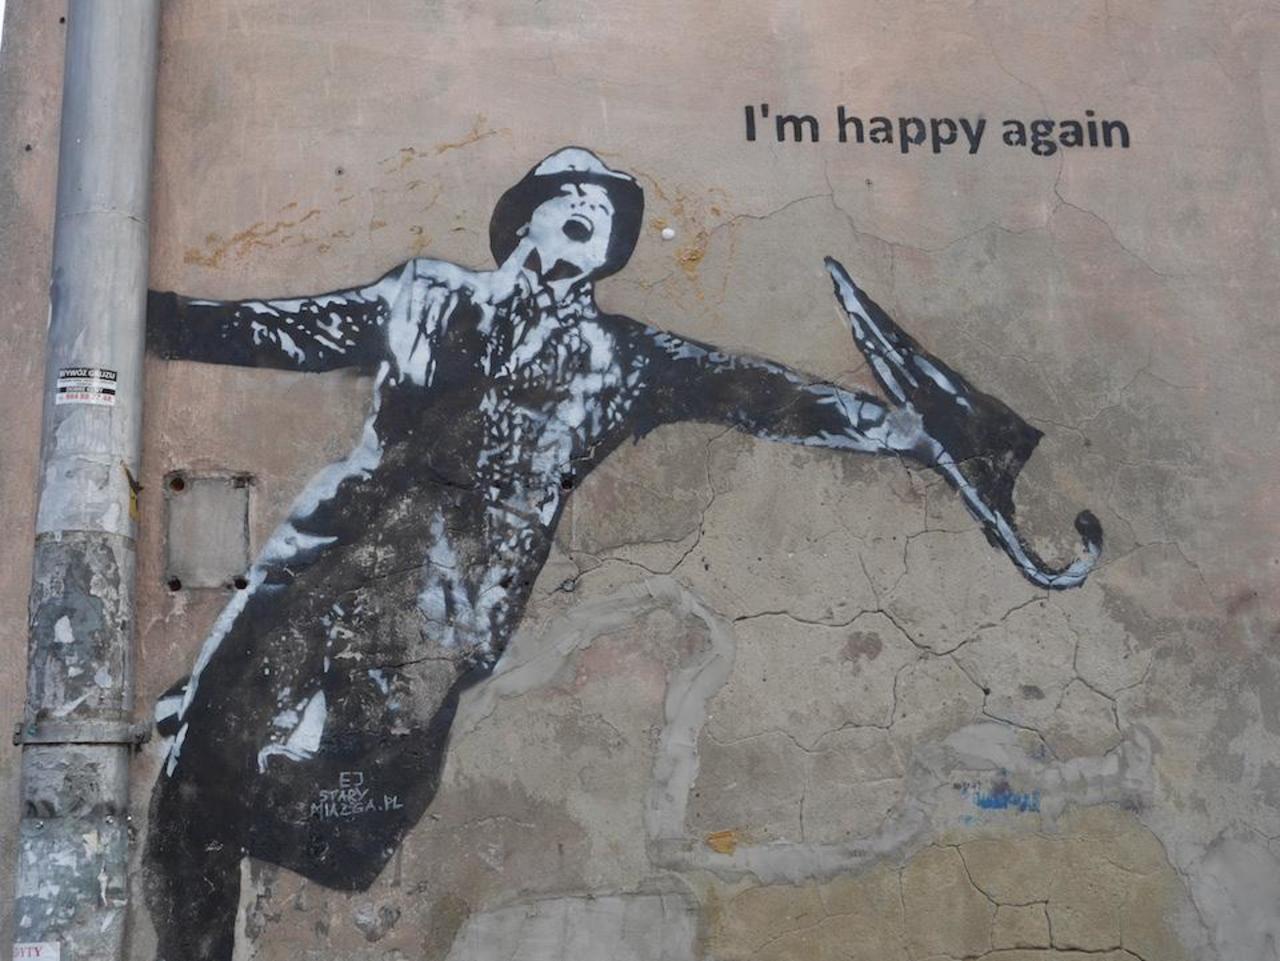 I´m happy again - Street Art in Krakow, Poland. #StreetArt #Graffiti #Mural http://t.co/eiG61RIMIZ